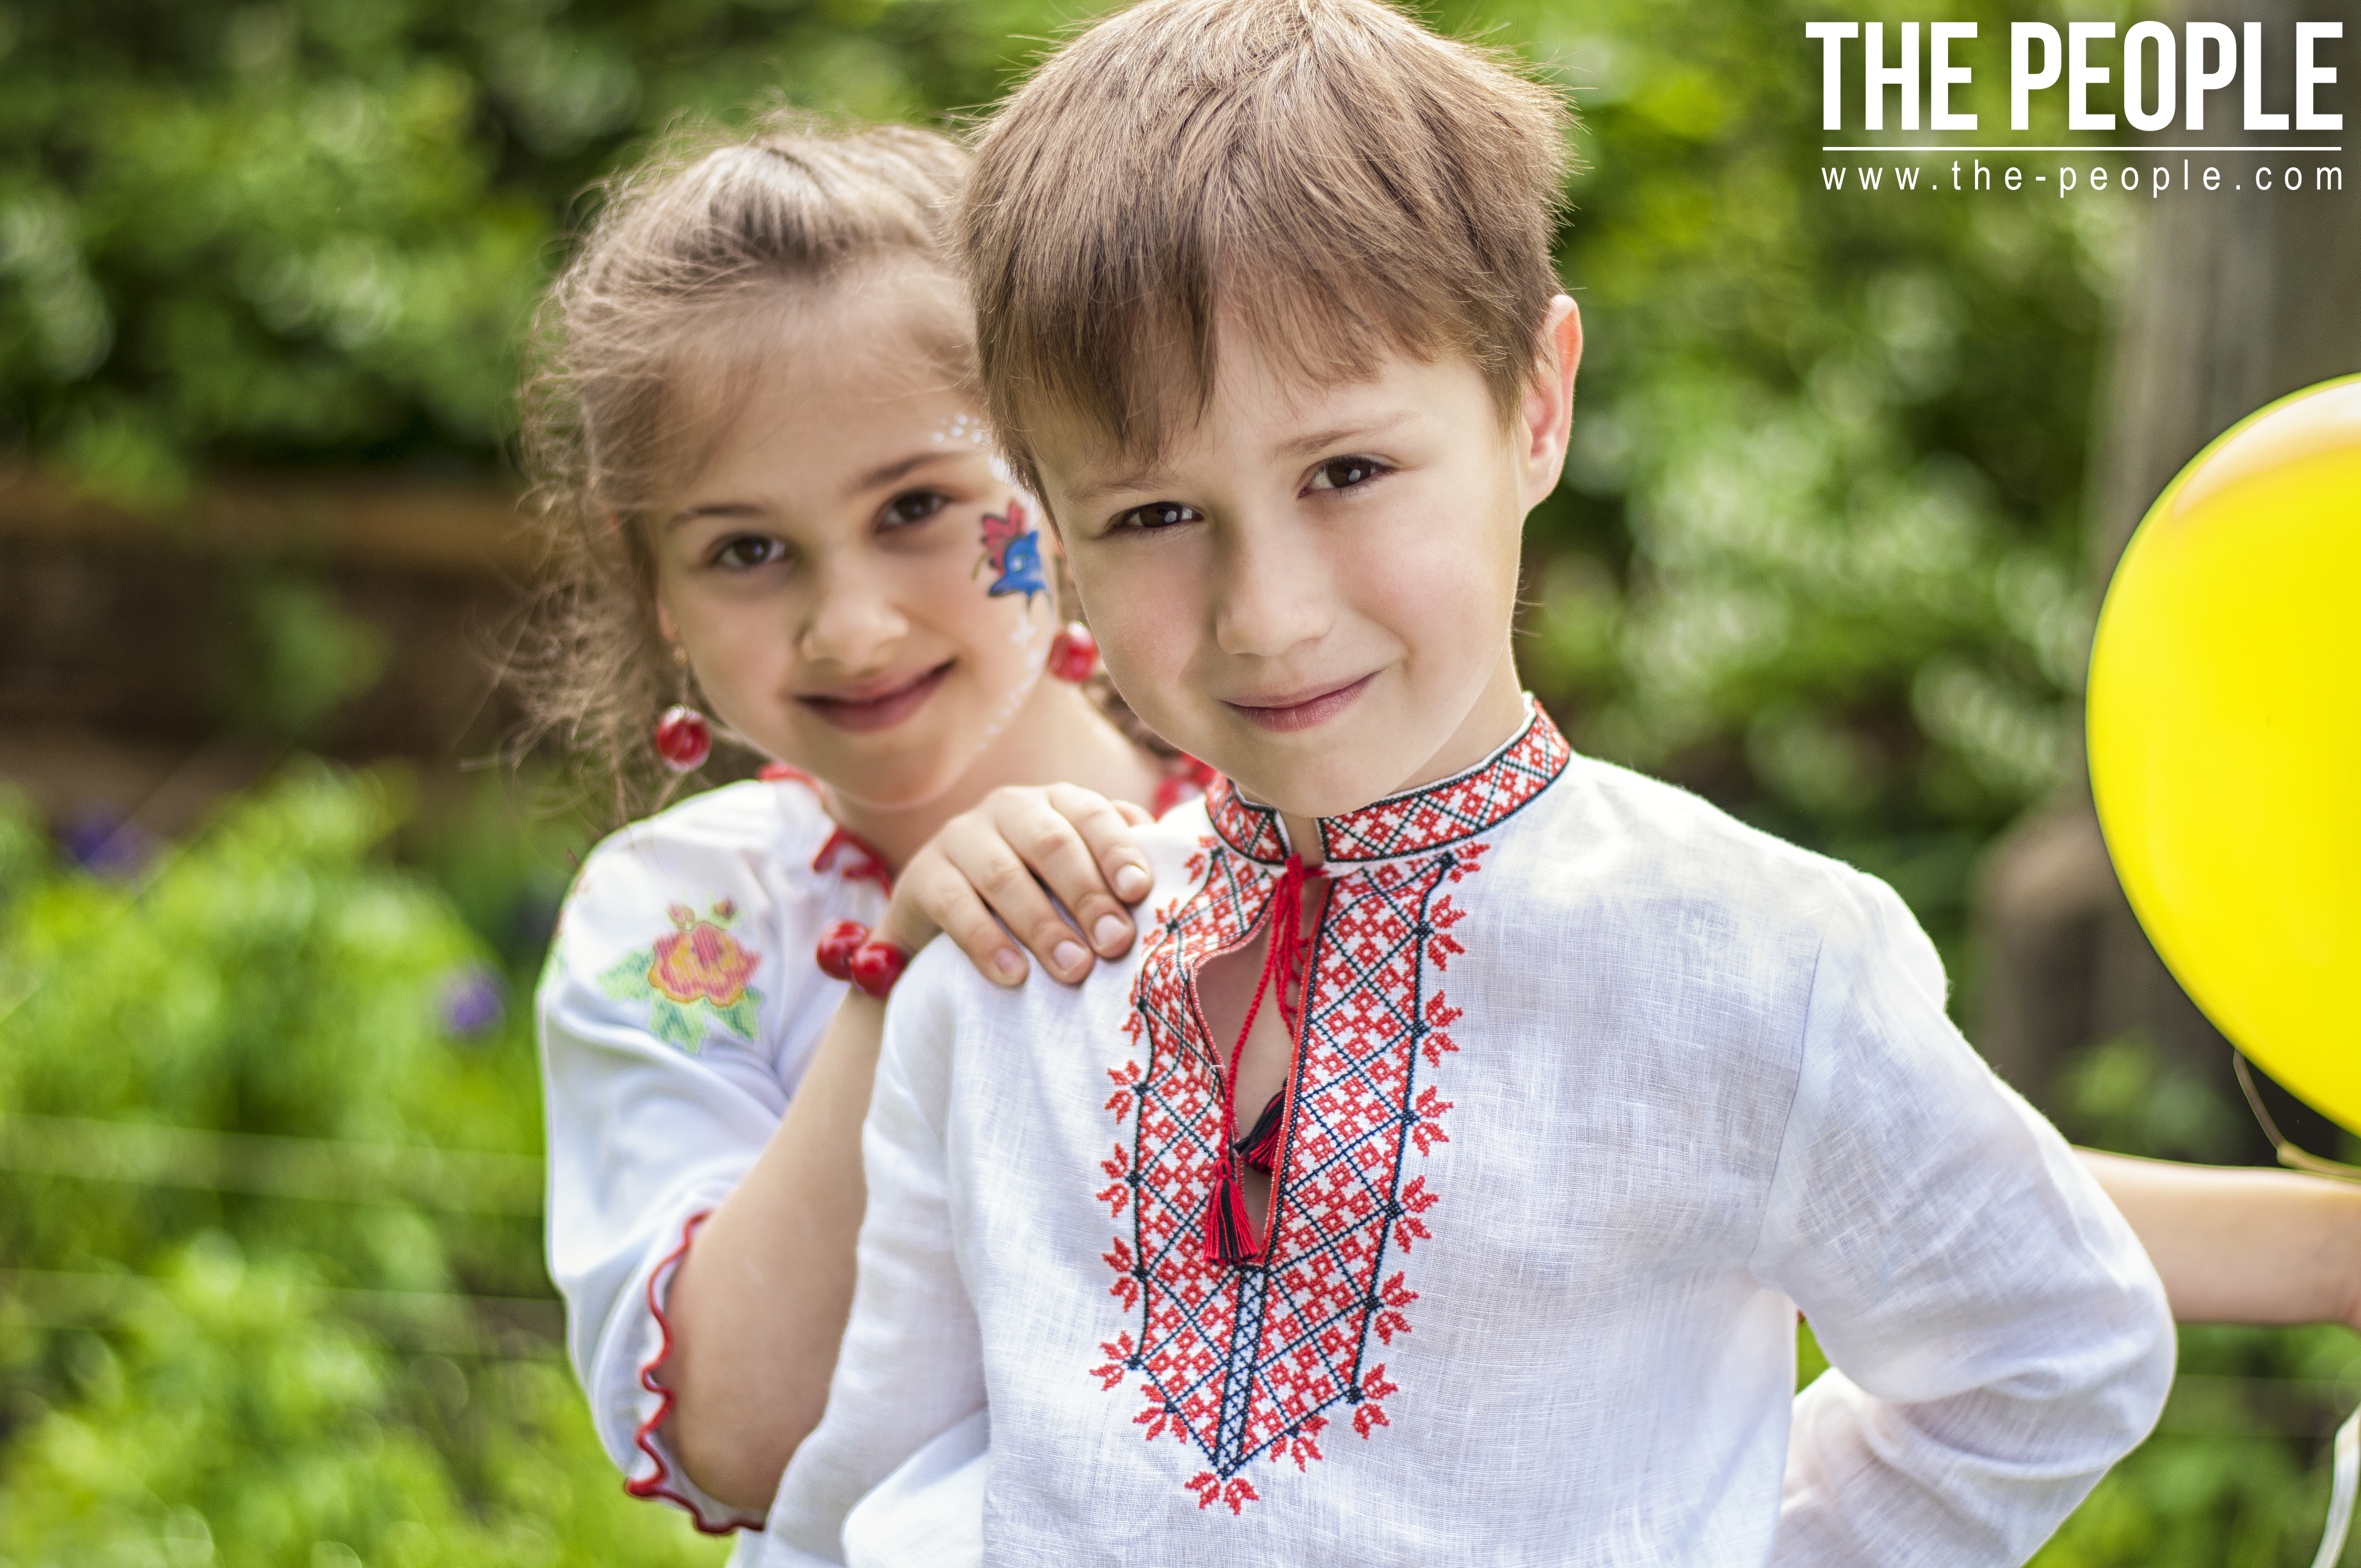 Маленькие украинцы. Дети в славянской одежде. Двое детей с голубыми глазами в славянской одежде. Фото русских детей с вышивкой. Фото рідна мати.